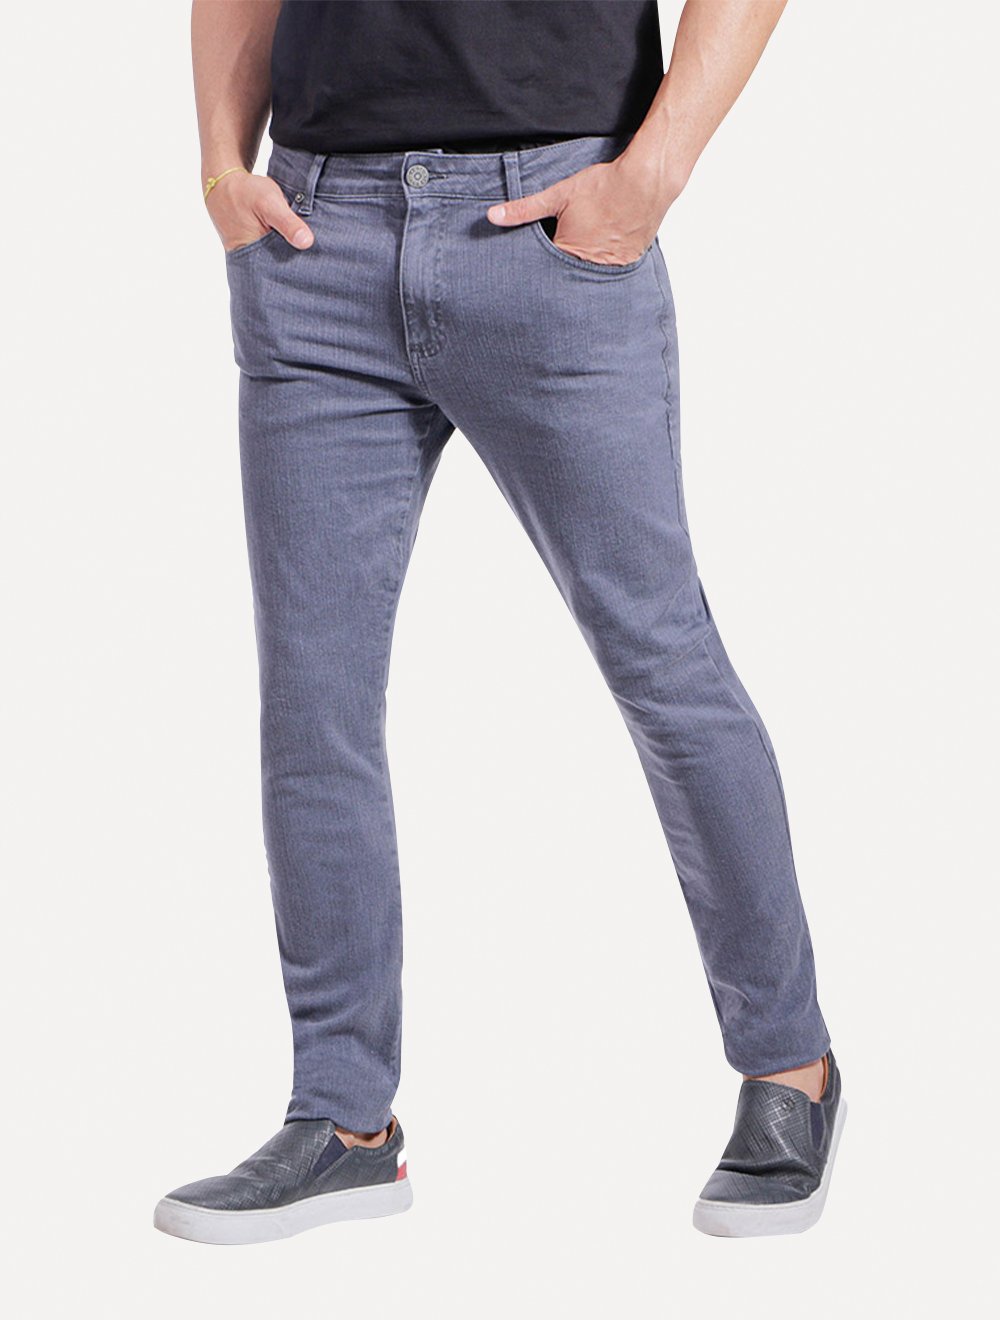 Calça Ralph Lauren Jeans Masculina Slim Stretch Stoned Azul